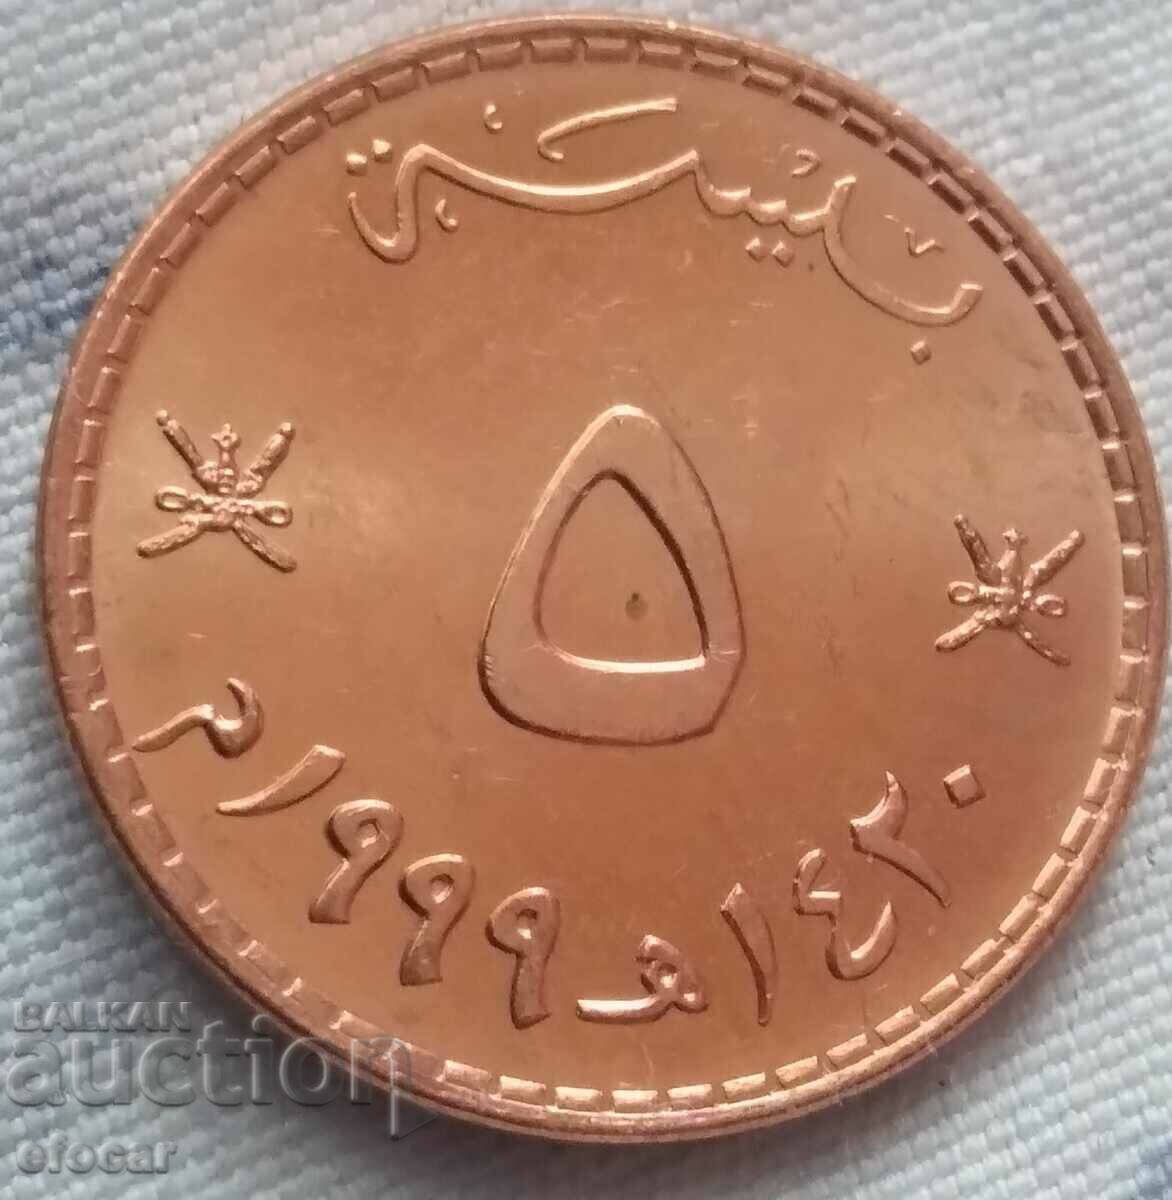 5 piastri Oman 1999